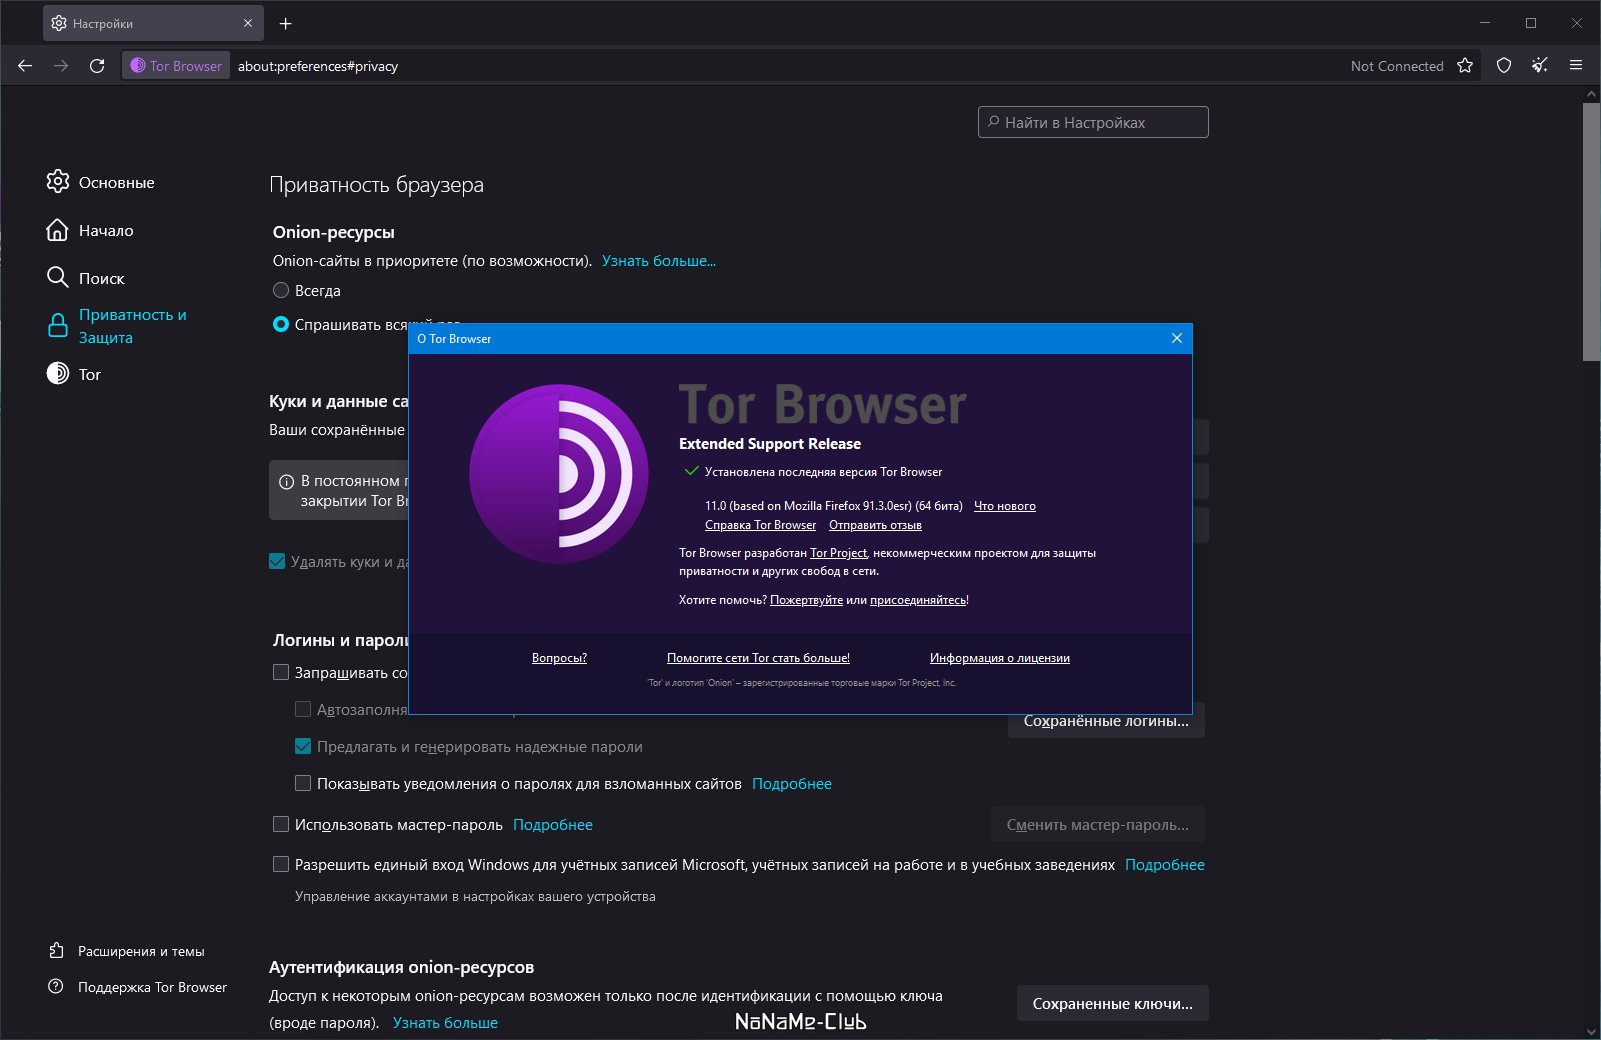 Скачать бесплатно tor browser bundle на русском mega down tor browser megaruzxpnew4af